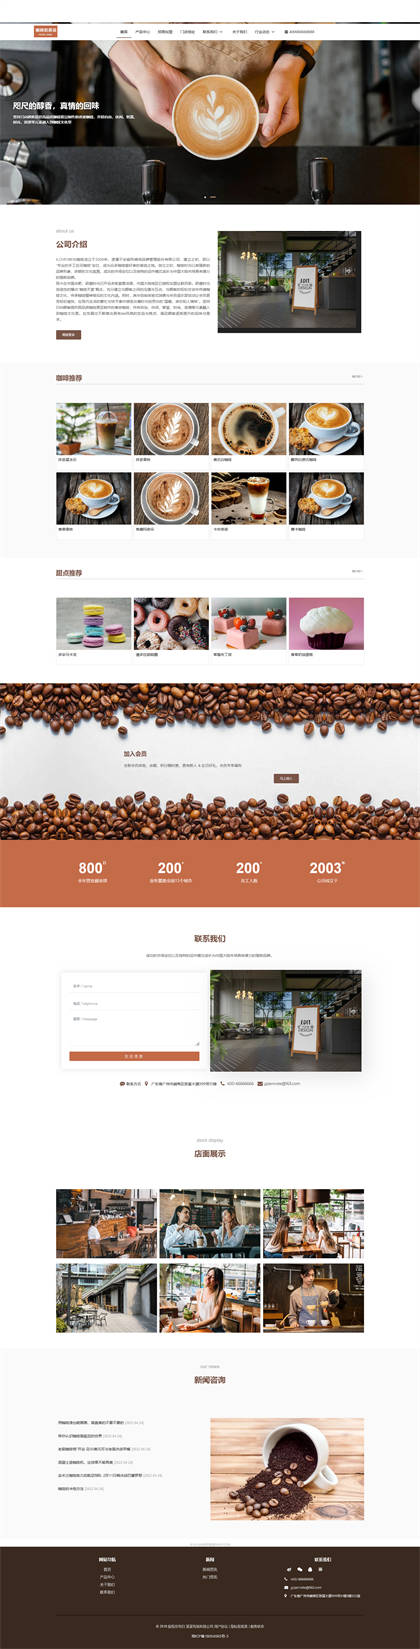 咖啡店-咖啡屋-奶茶店-休闲吧-咖啡厂网站模板网站模板预览图片